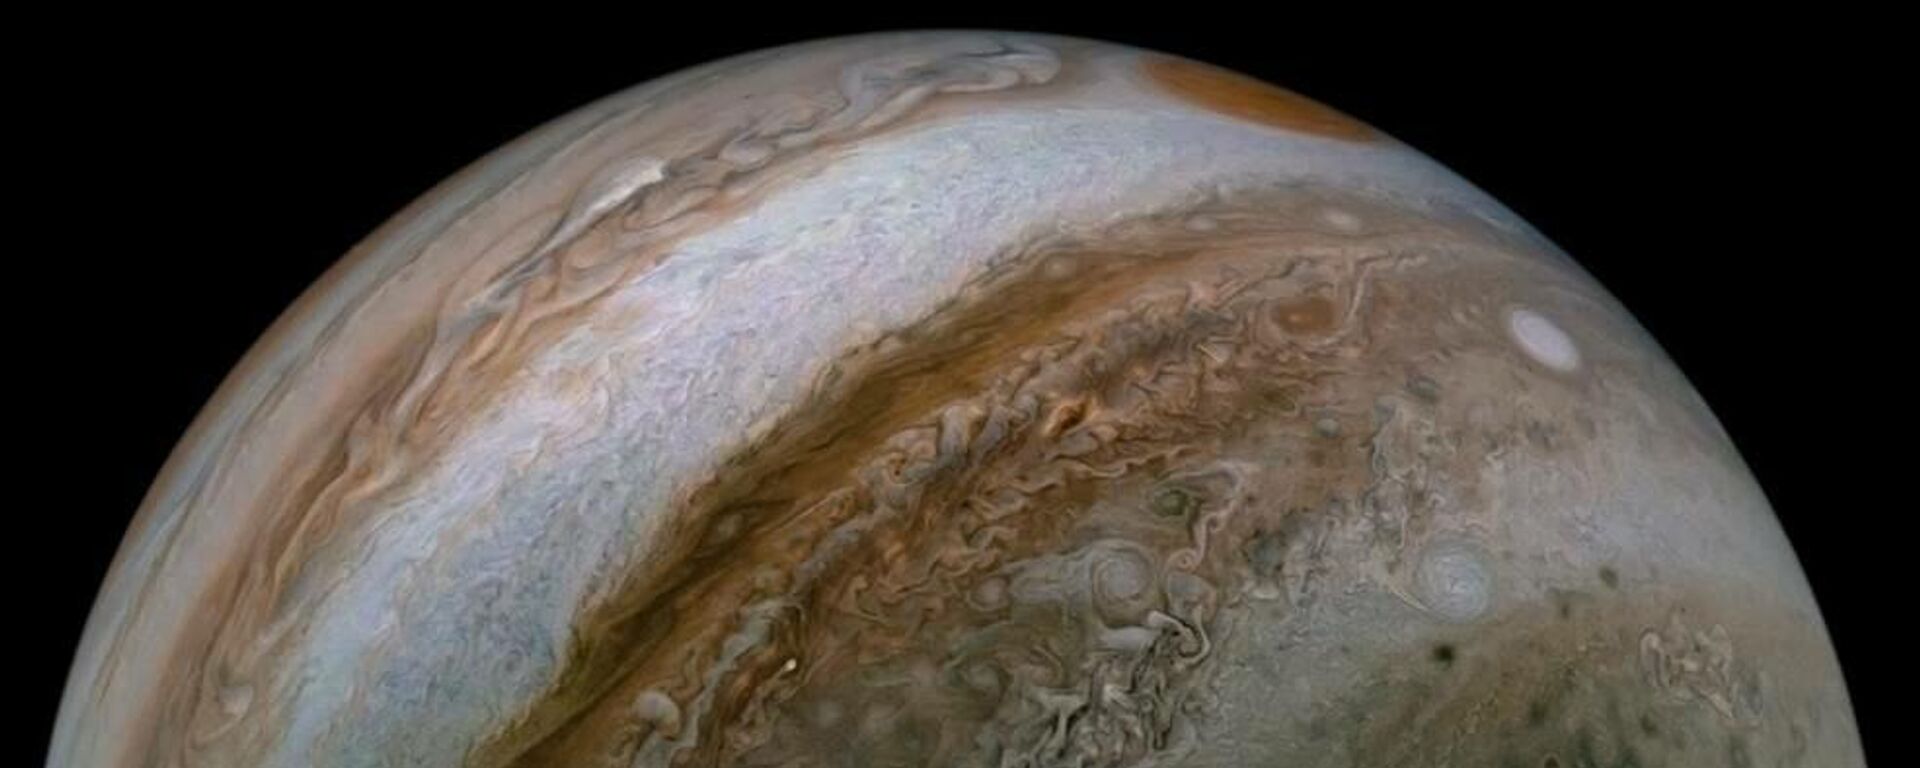 El planeta Júpiter en imagen de la NASA. - Sputnik Mundo, 1920, 13.12.2021